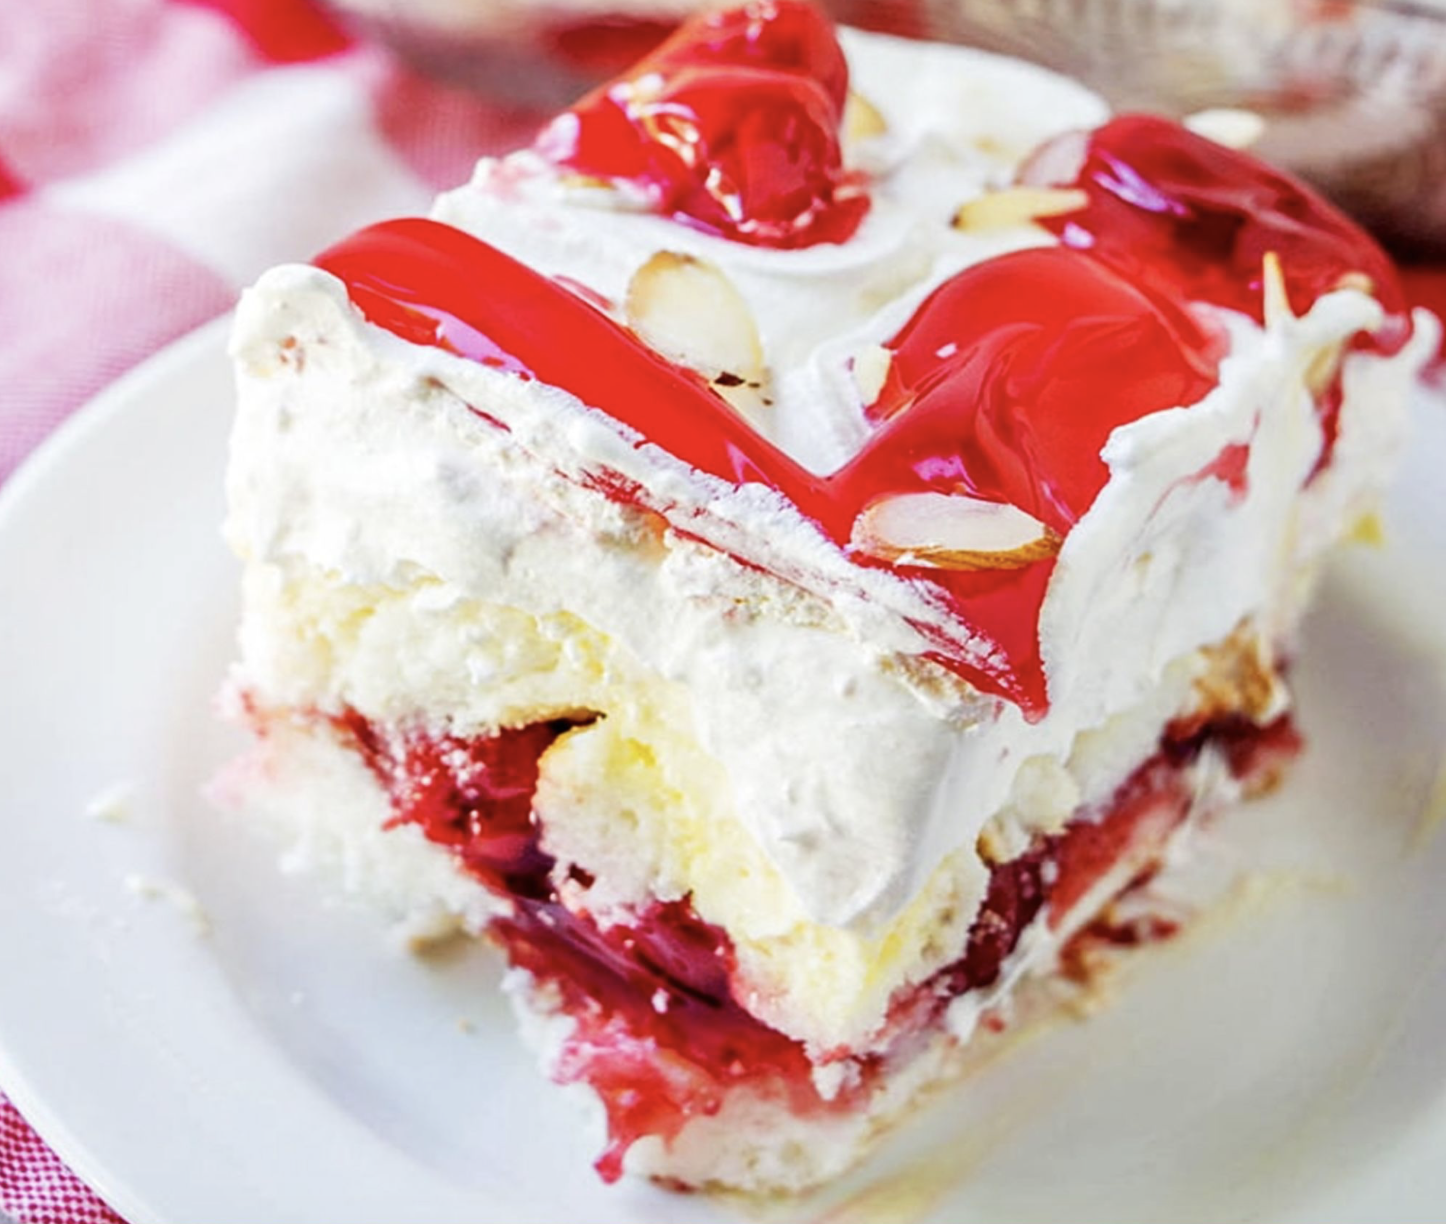 Strawberry Heaven on Earth Cake: A Divine Dessert Recipe